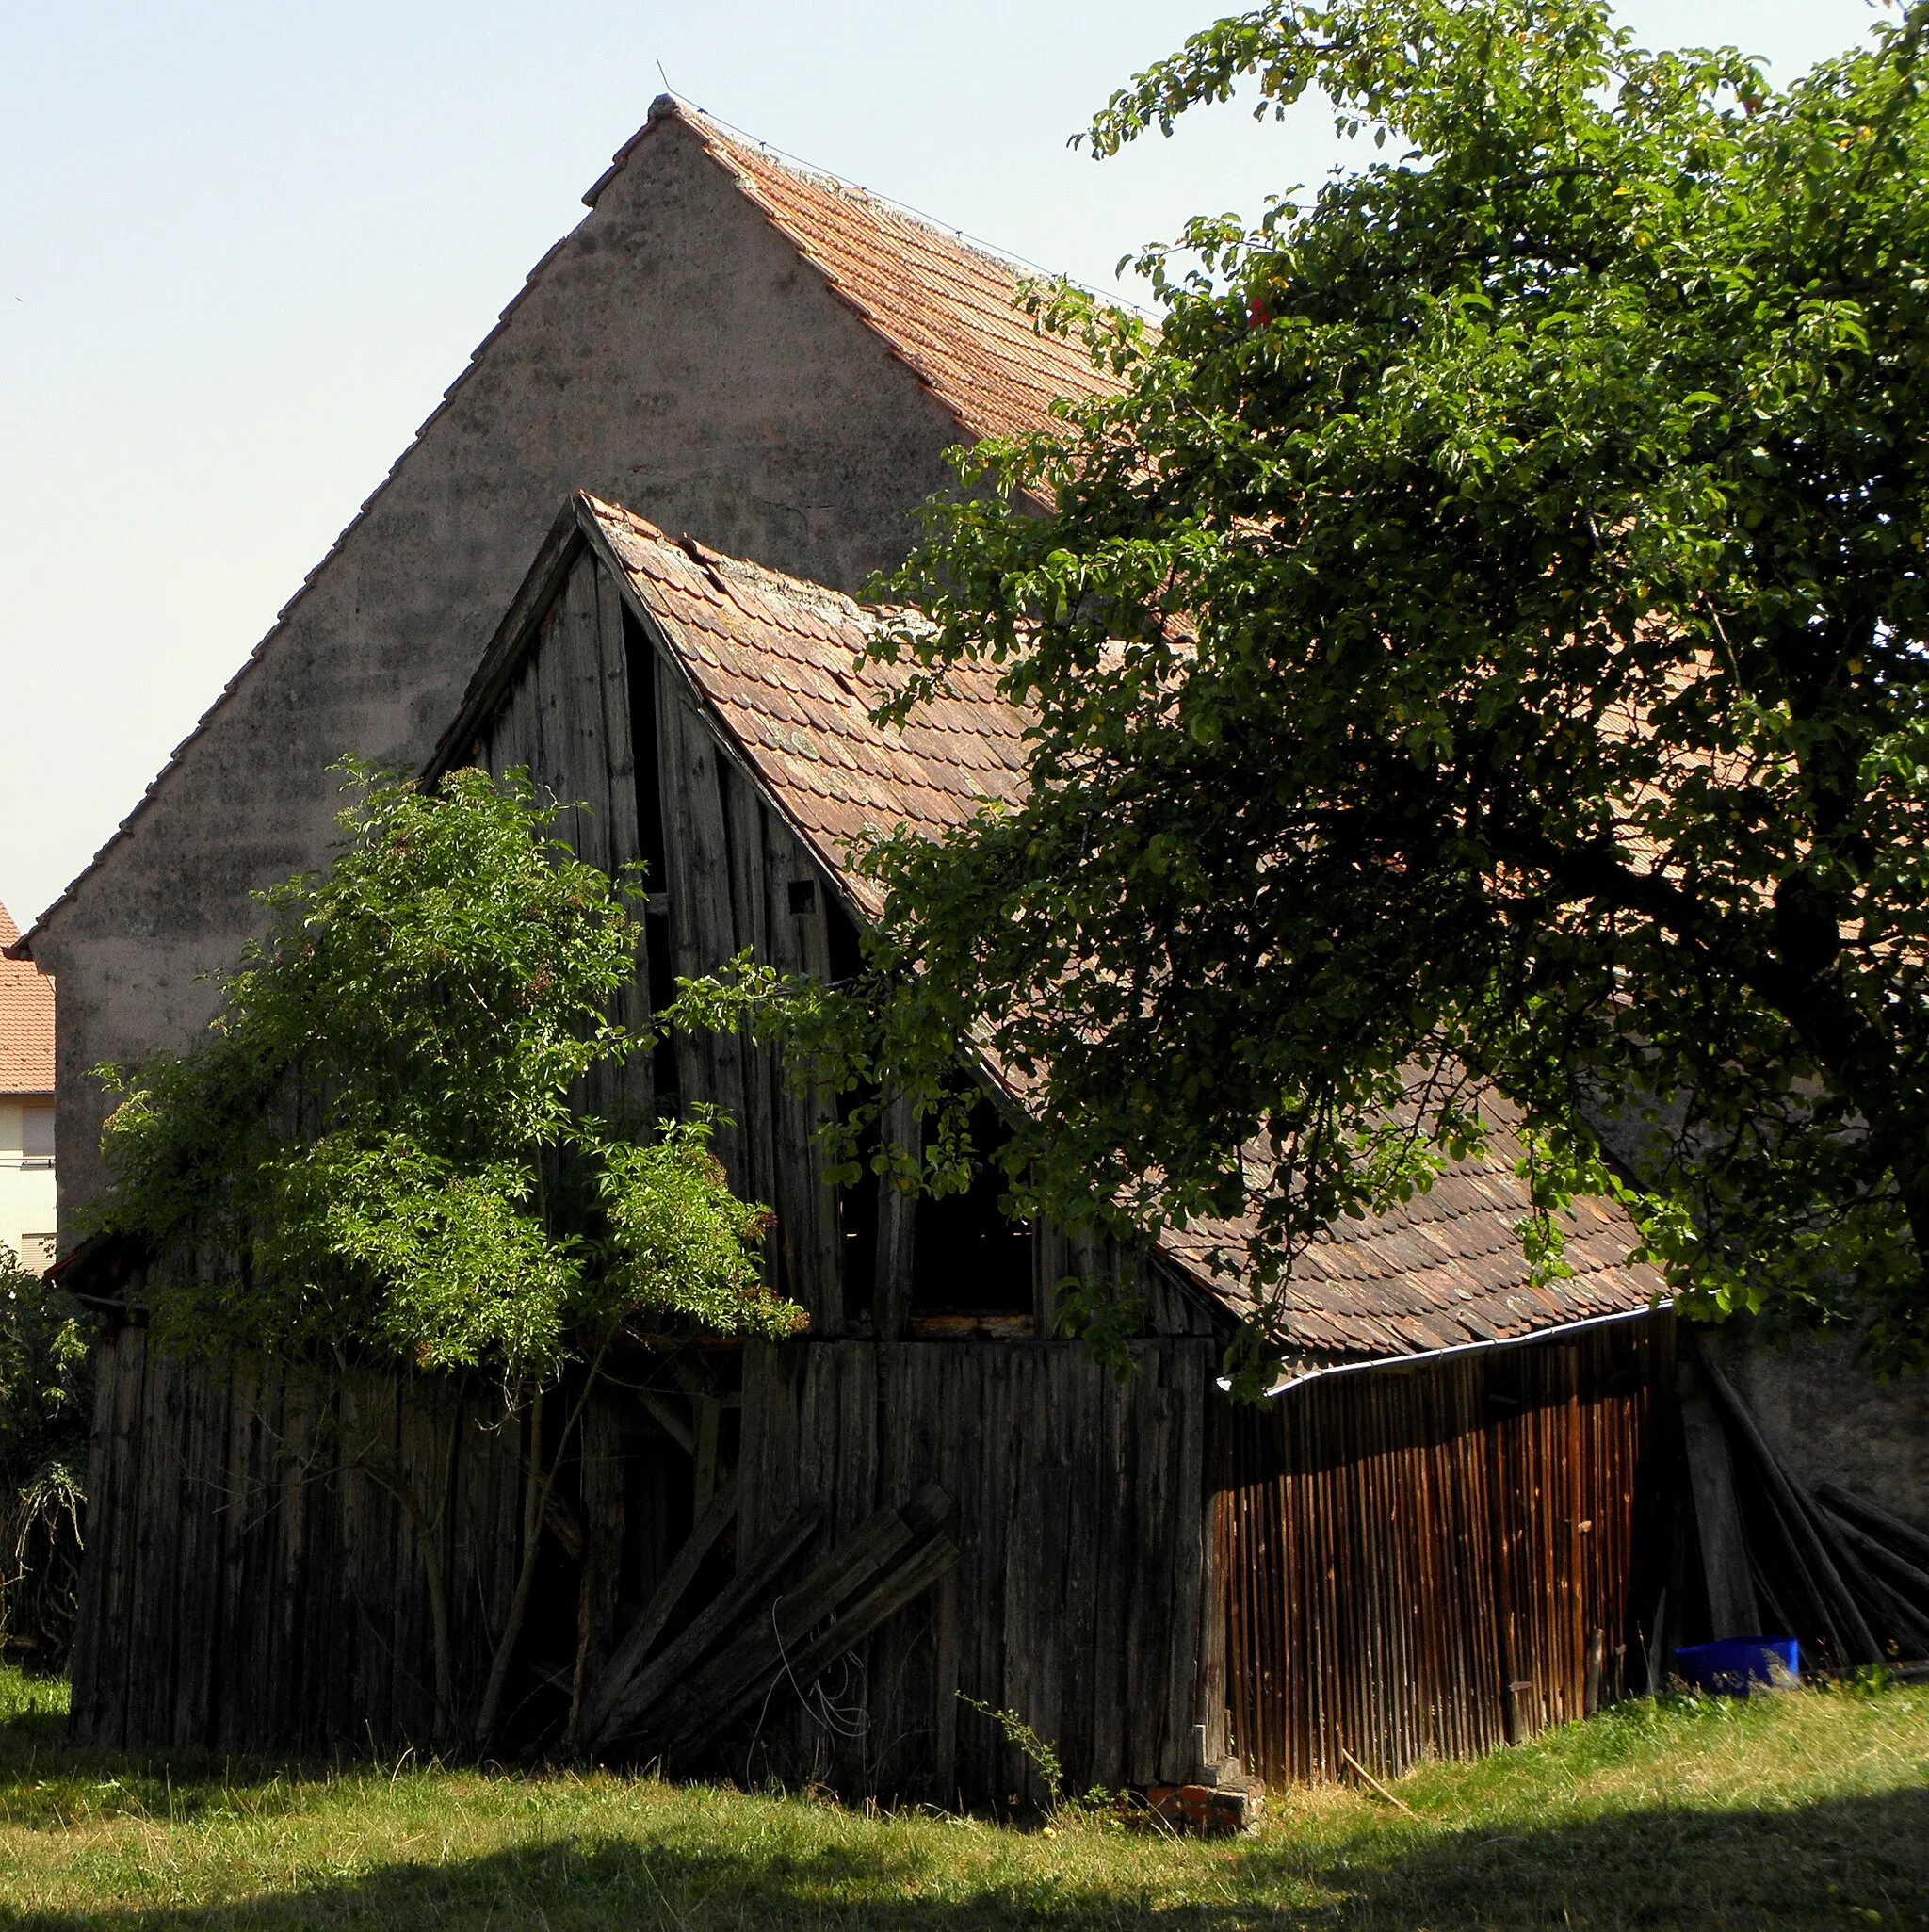 Photo showing: Original-Bildtitel des Fotografen: „rotten shed“. Ein hölzerner Schuppen in Friedrichsthal, Gemeinde Ehingen, Landkreis Ansbach, Mittelfranken, Bayern.